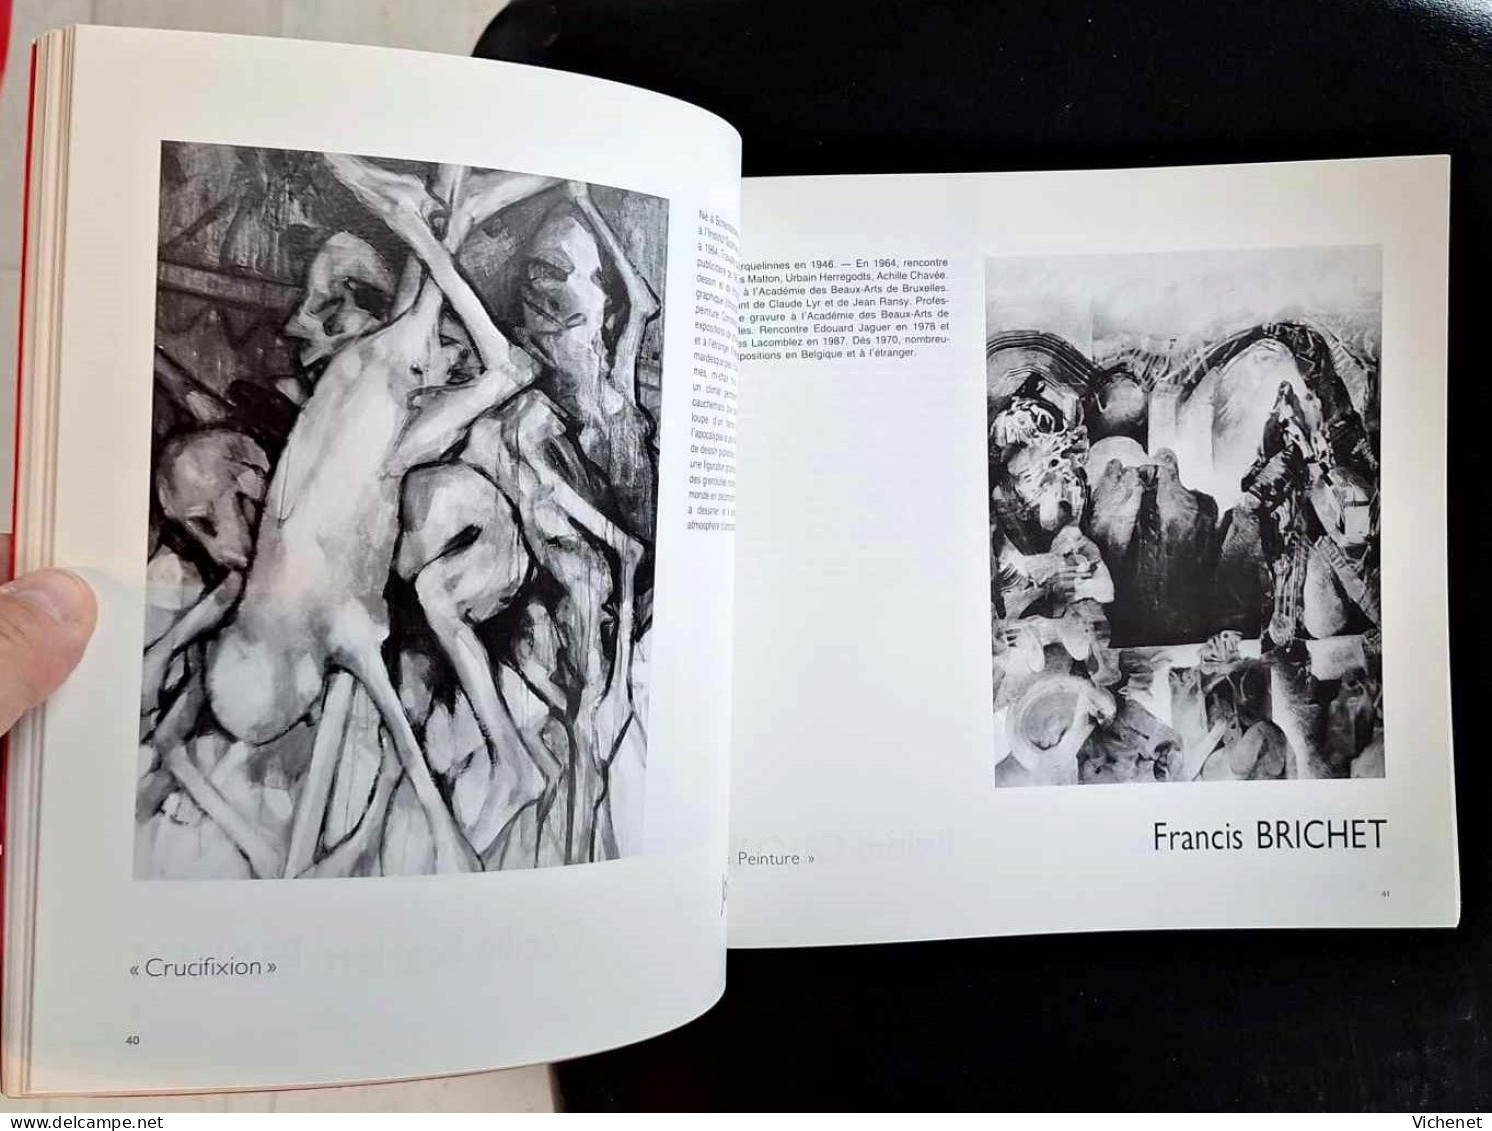 Figuration Critique - Catalogue D'Exposition - Mons, 1992 - Arte